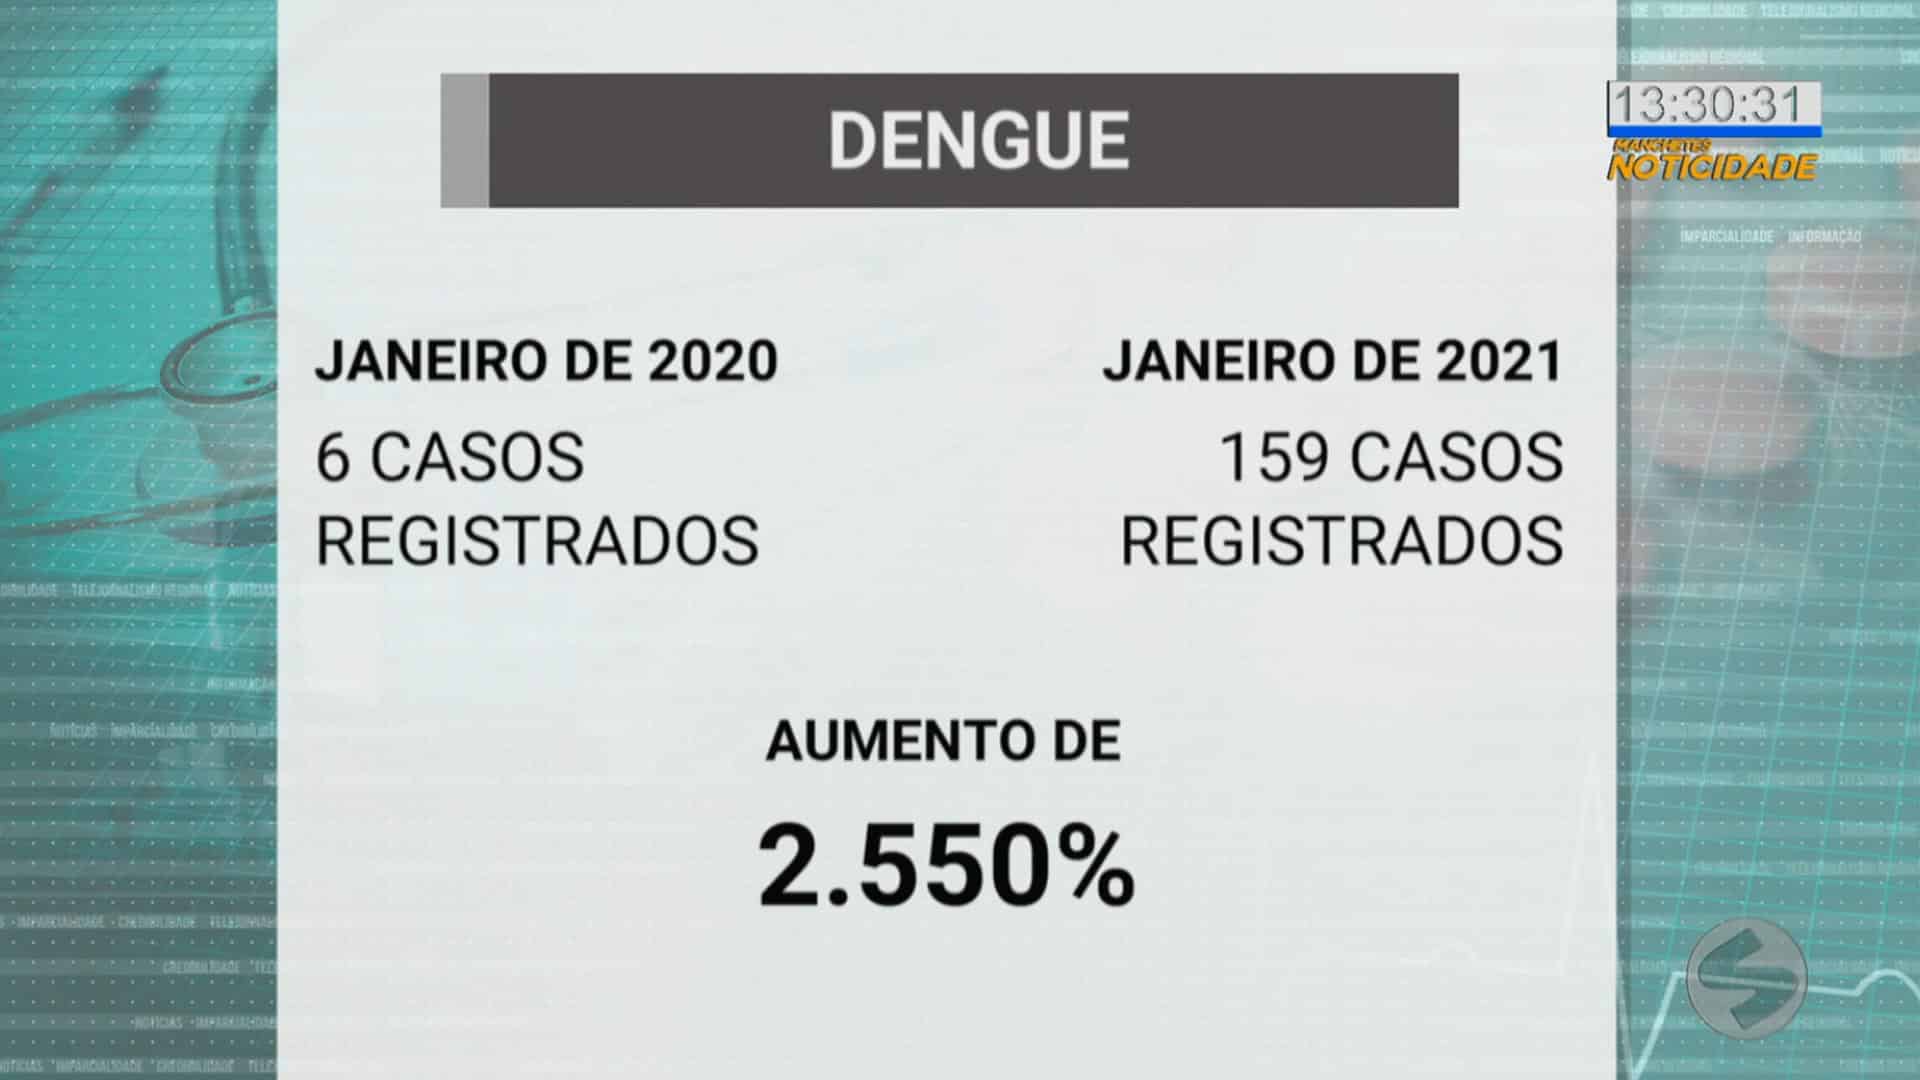 Alerta para dengue em Tatuí